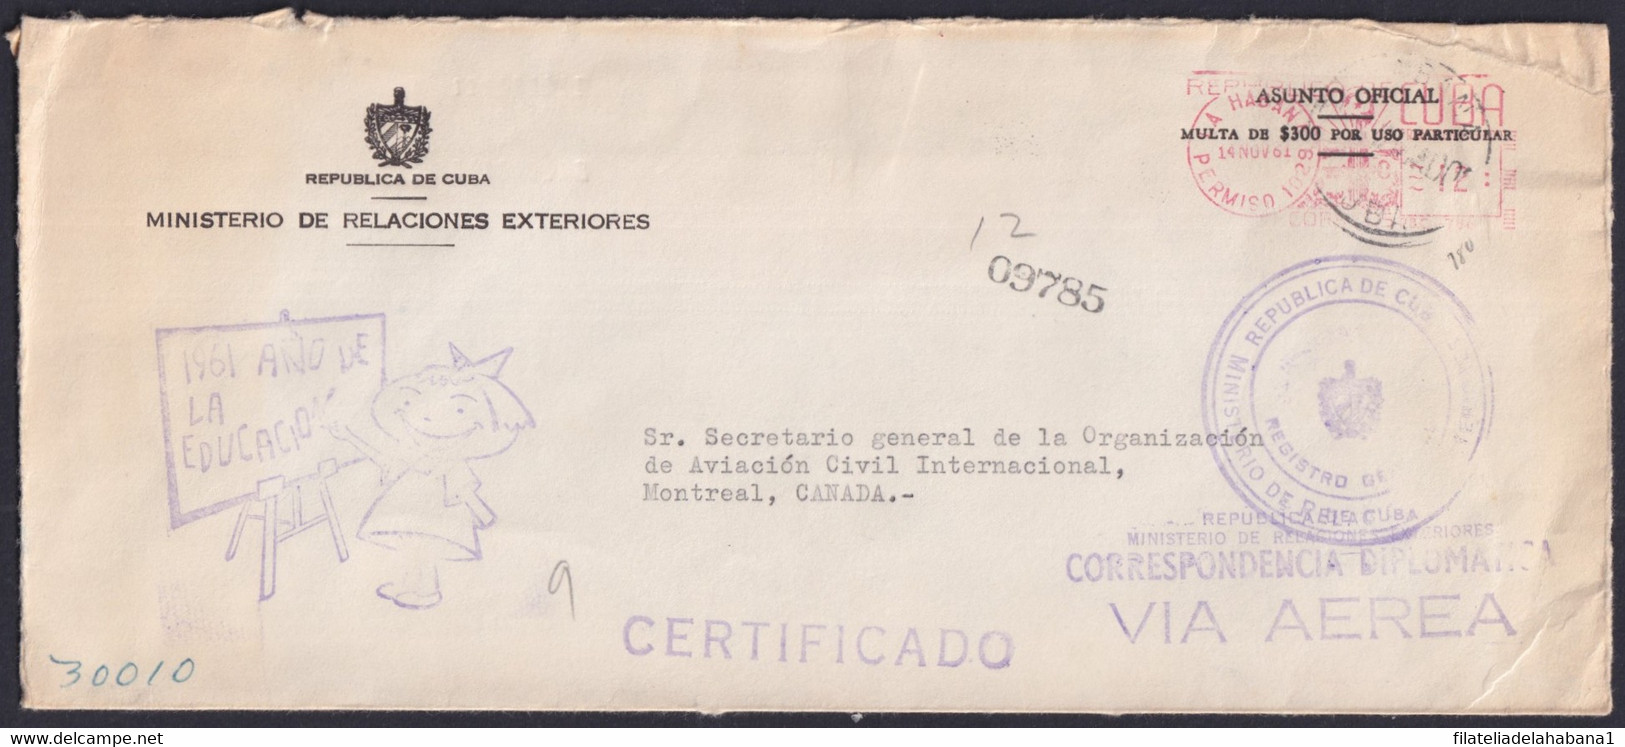 FM-141 CUBA LG2153 1961 PITNEY BOWES DIPLOMATIC COVER PERMISO 1029 MINREX EDUCATION SPECIAL CANCEL. - Vignettes D'affranchissement (Frama)